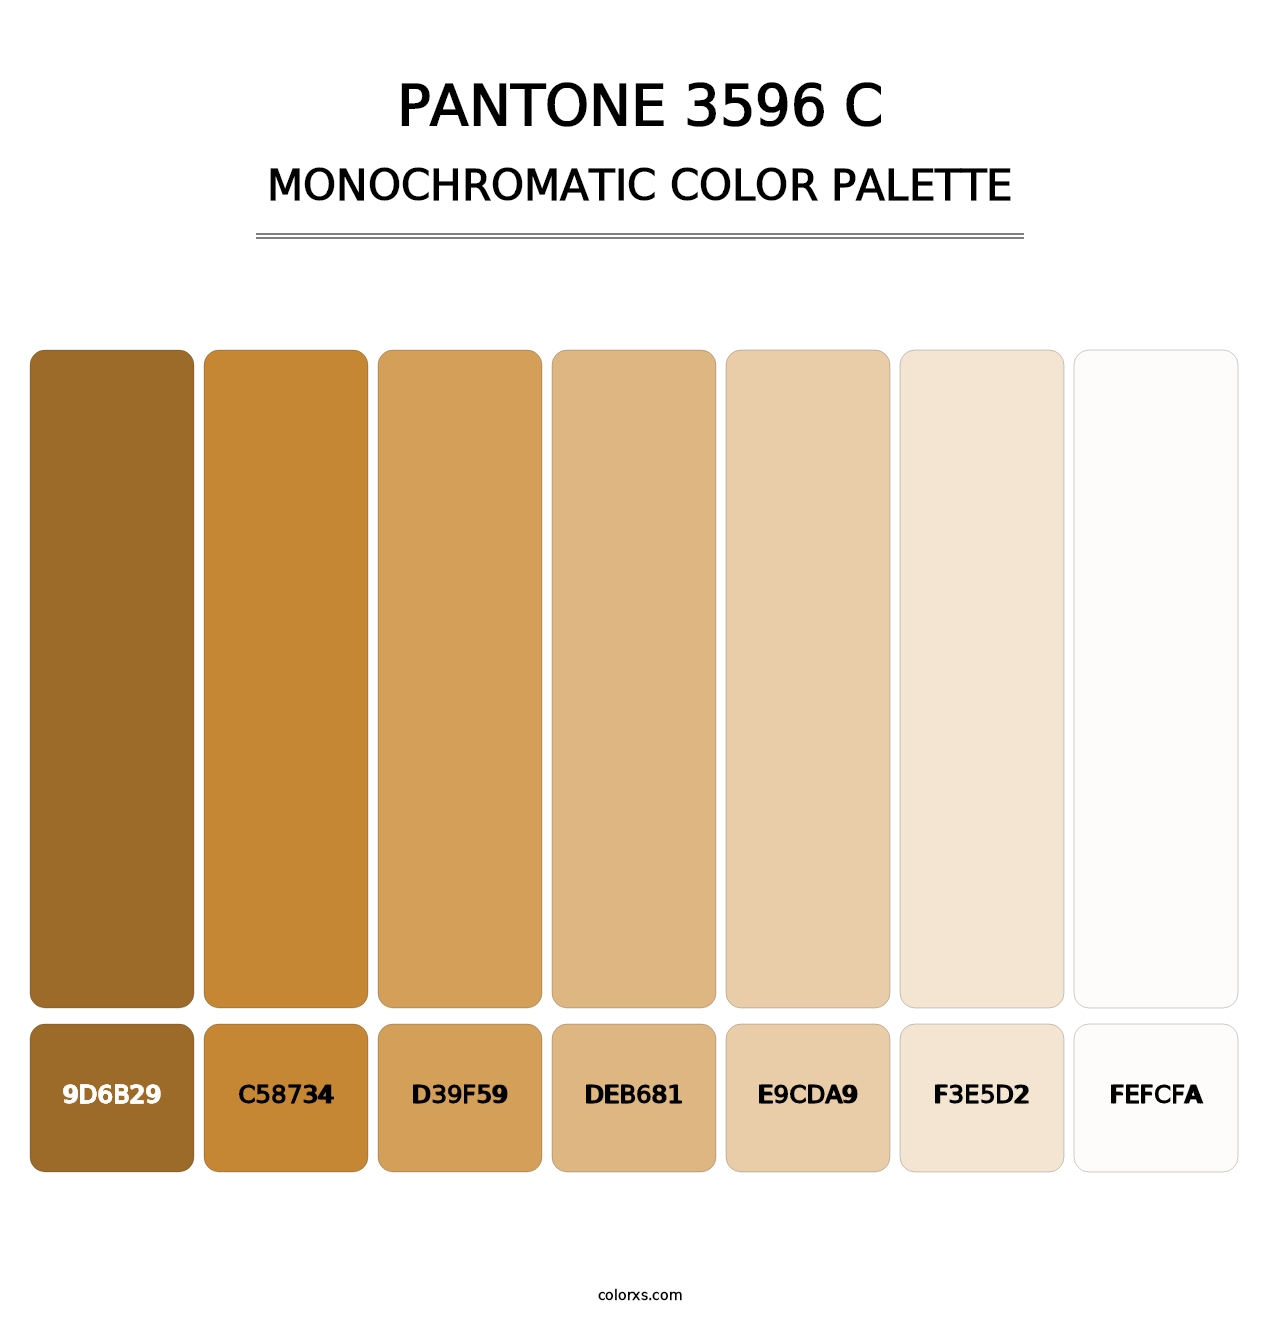 PANTONE 3596 C - Monochromatic Color Palette